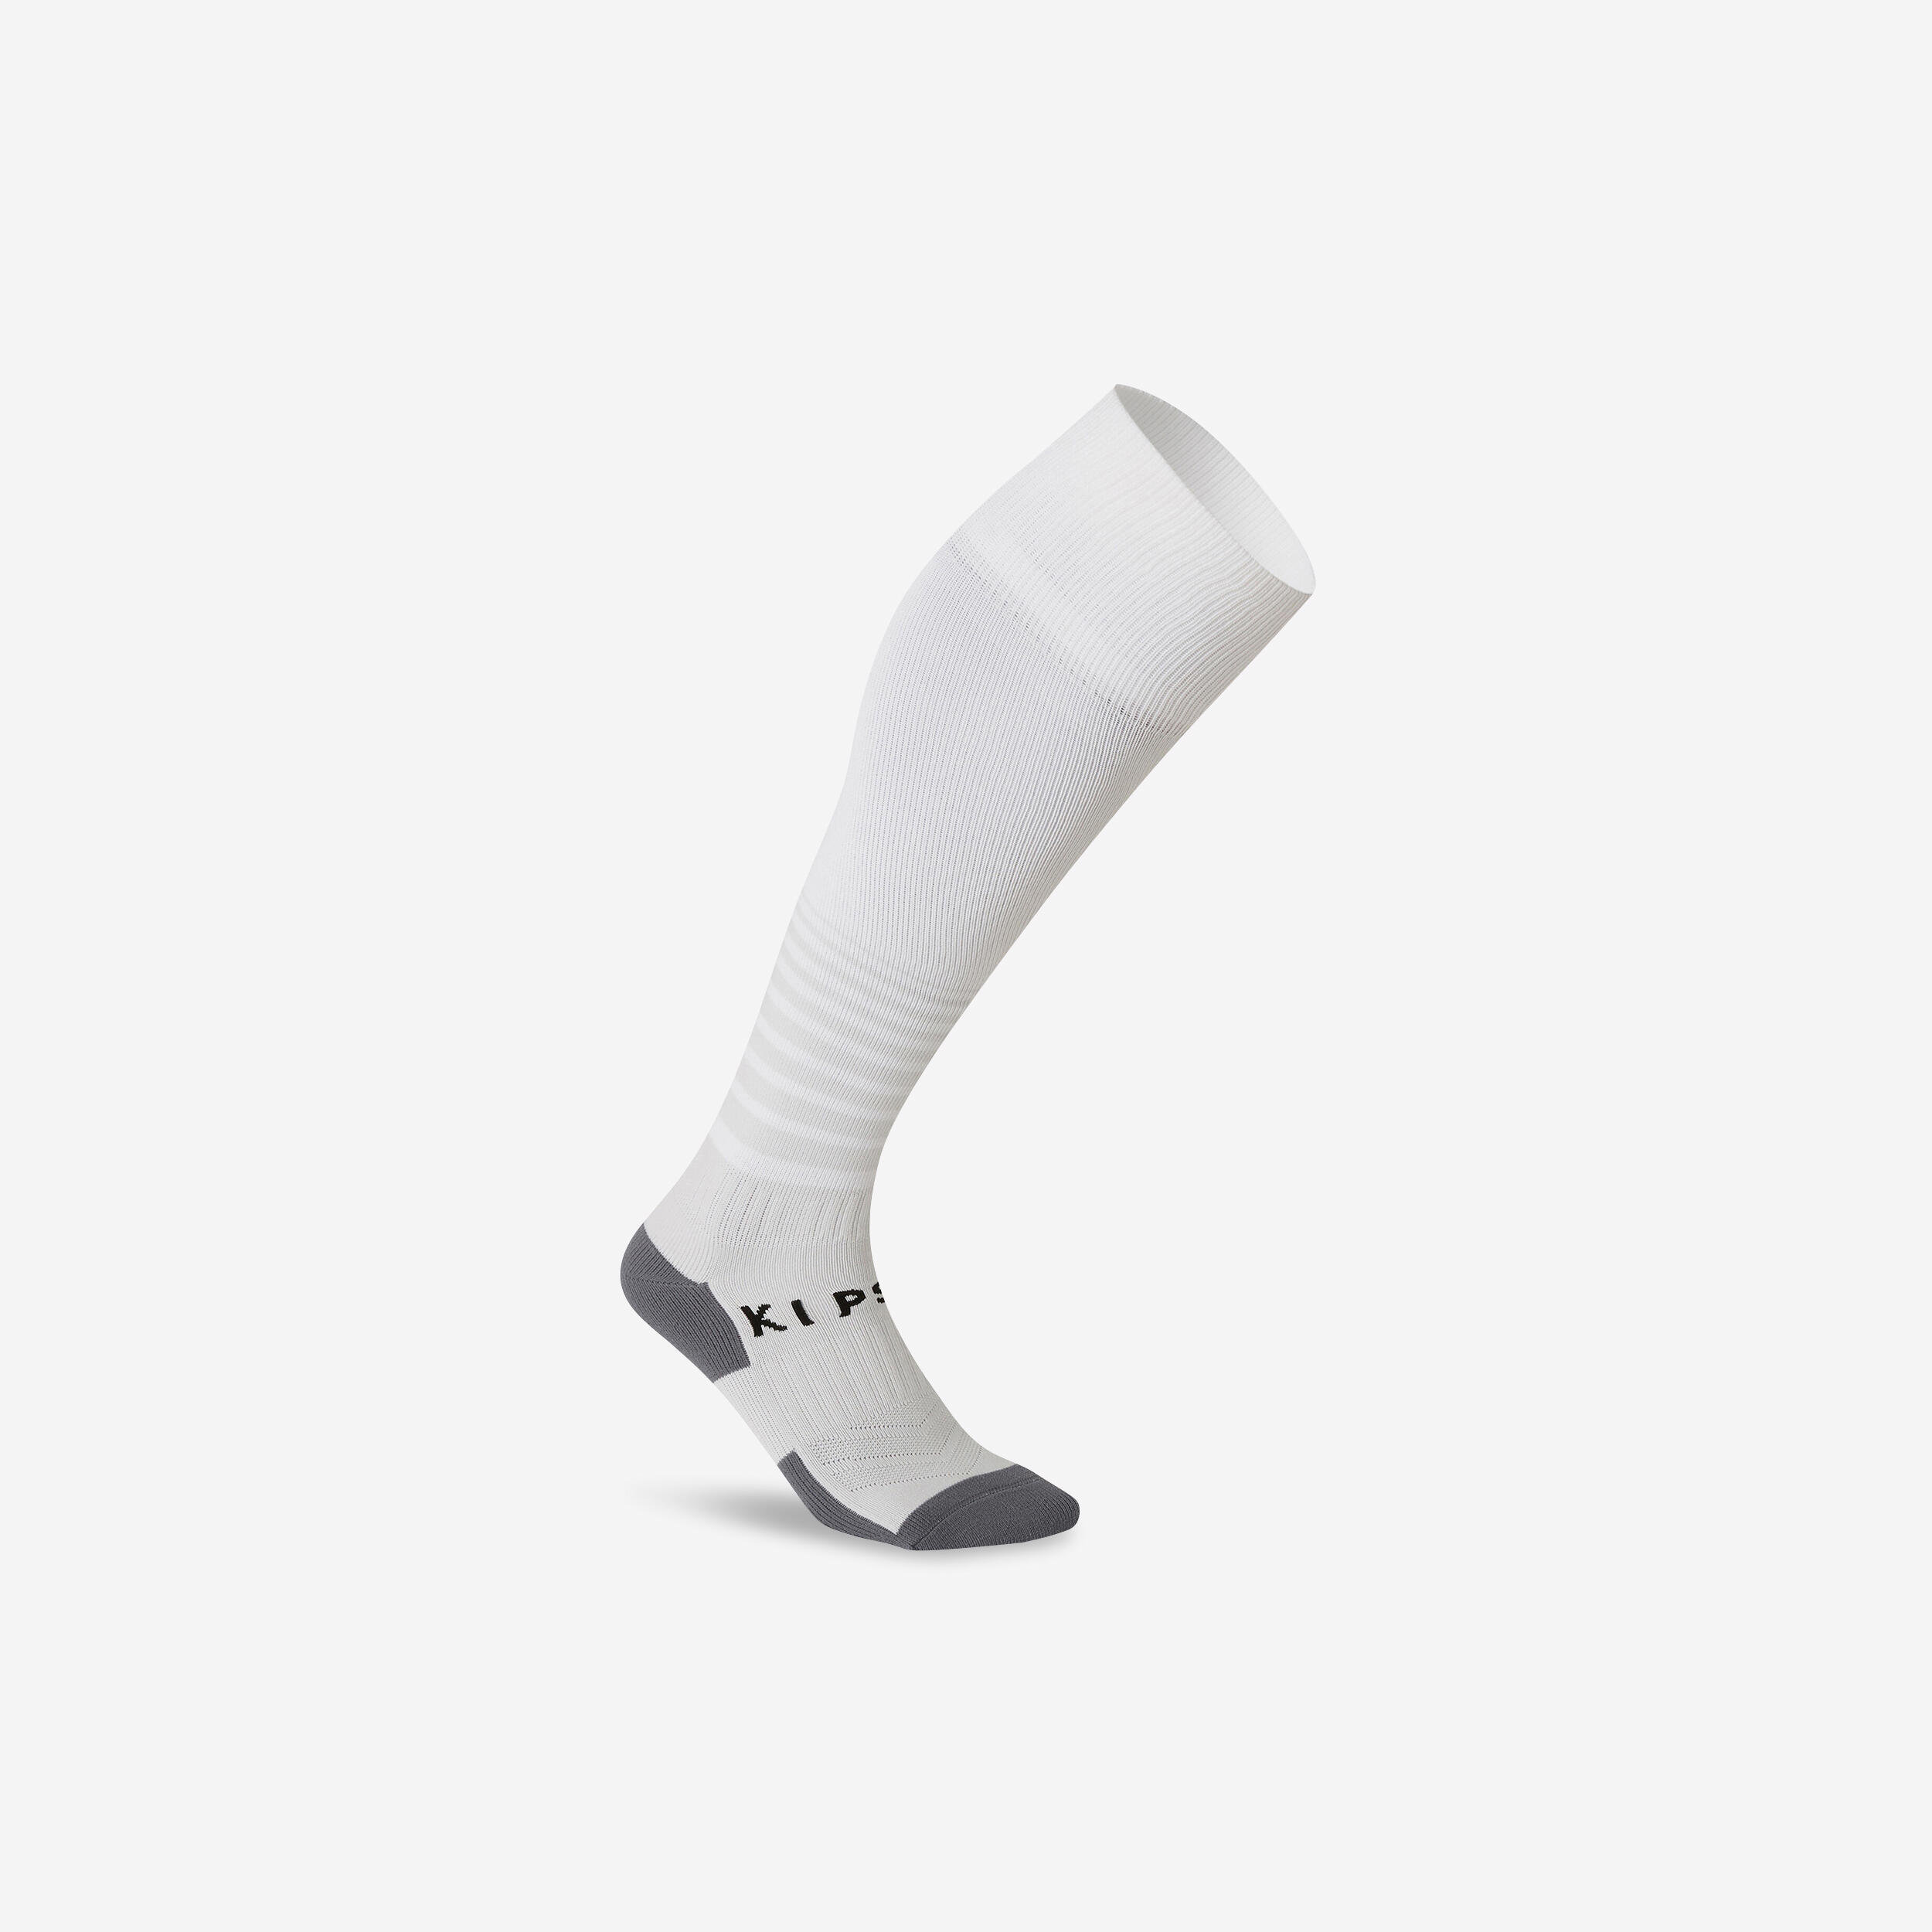 F 500 soccer socks